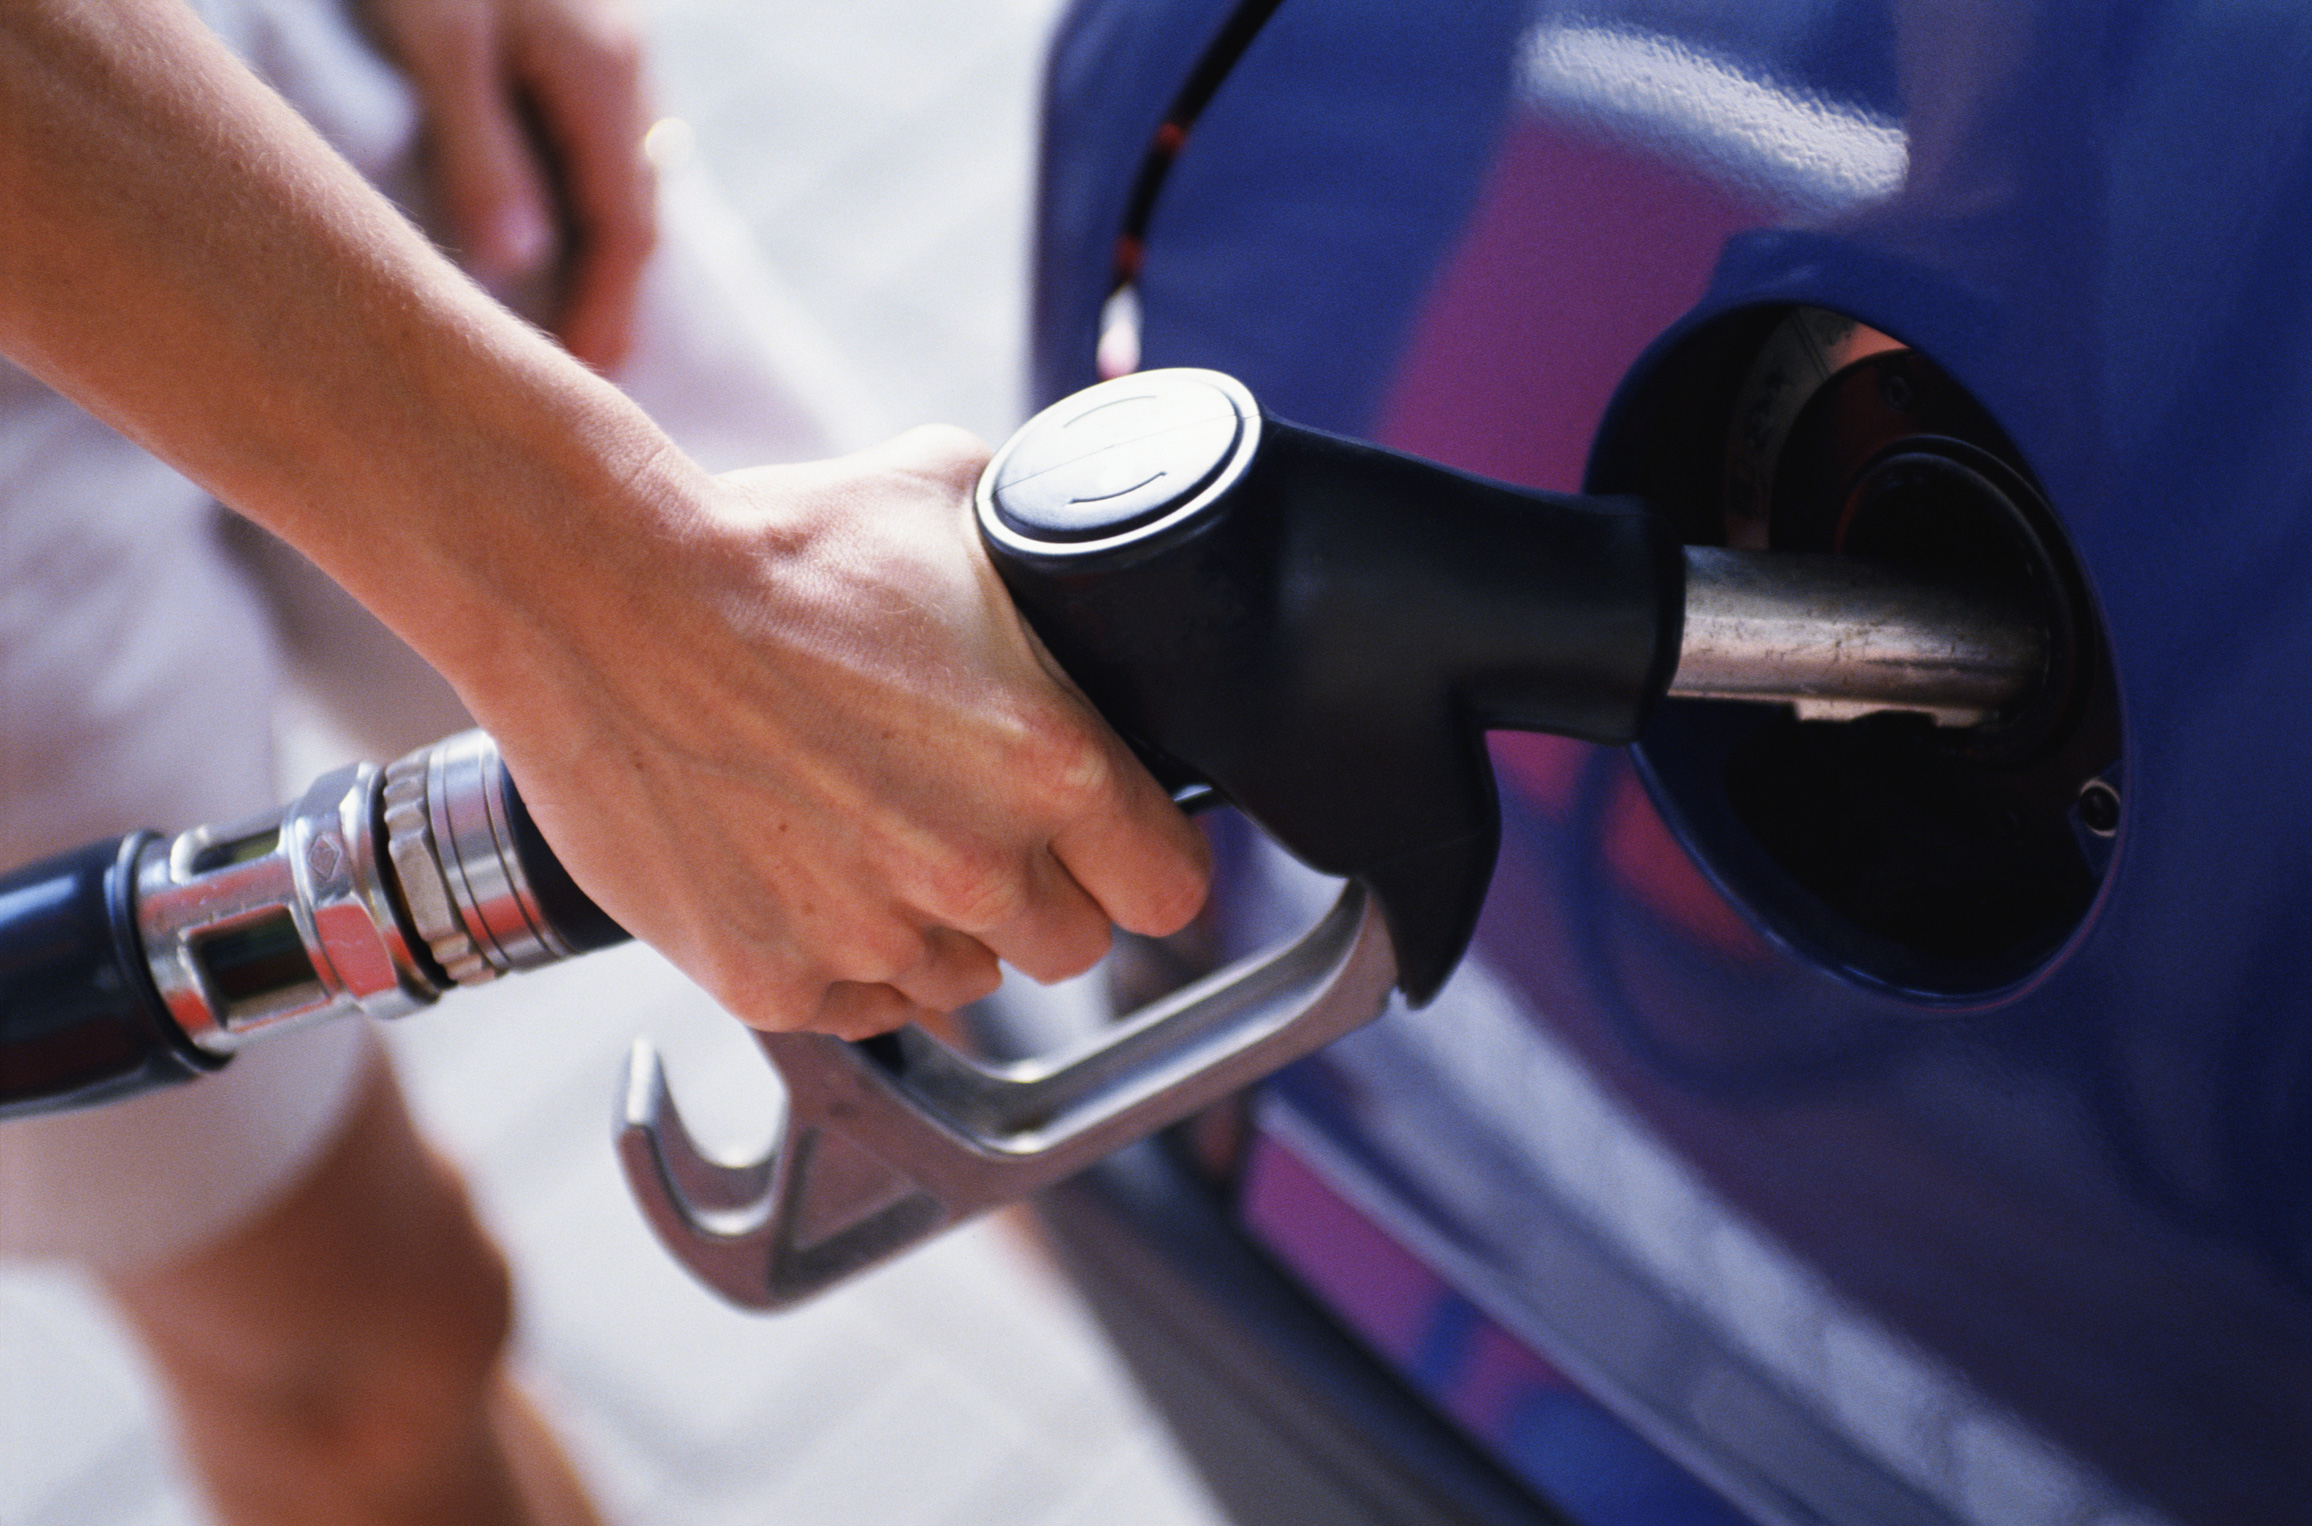 АМКУ возбудил дело за антиконкурентные действия операторов на рынке бензинов и дизтоплива. ВИДЕО